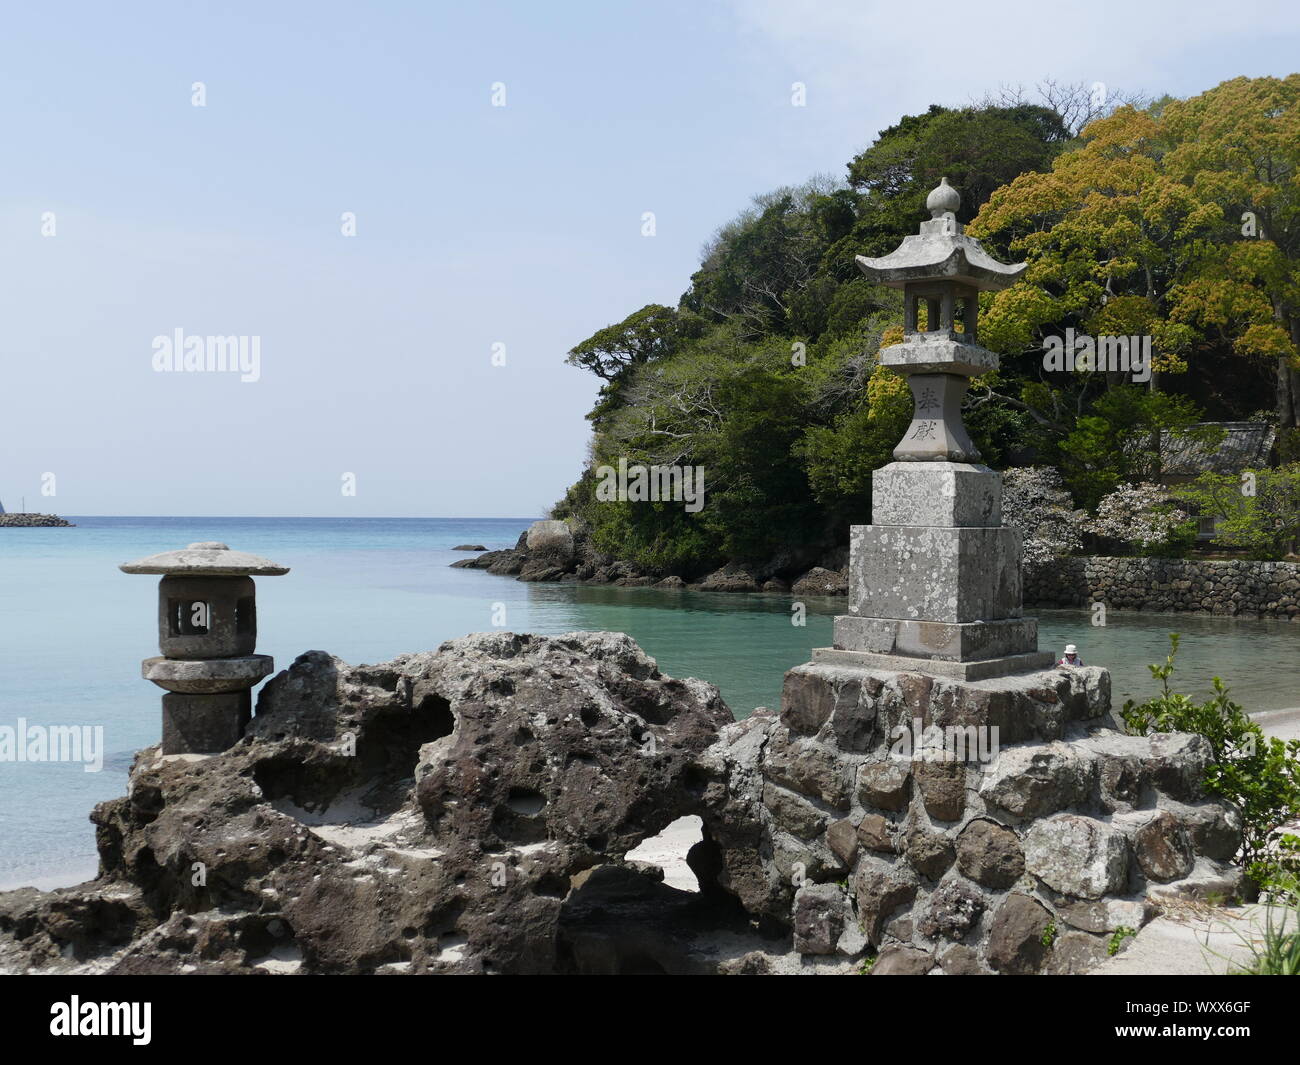 Colonna giapponese su una spiaggia, Hirado, Kyushu, Giappone Foto Stock